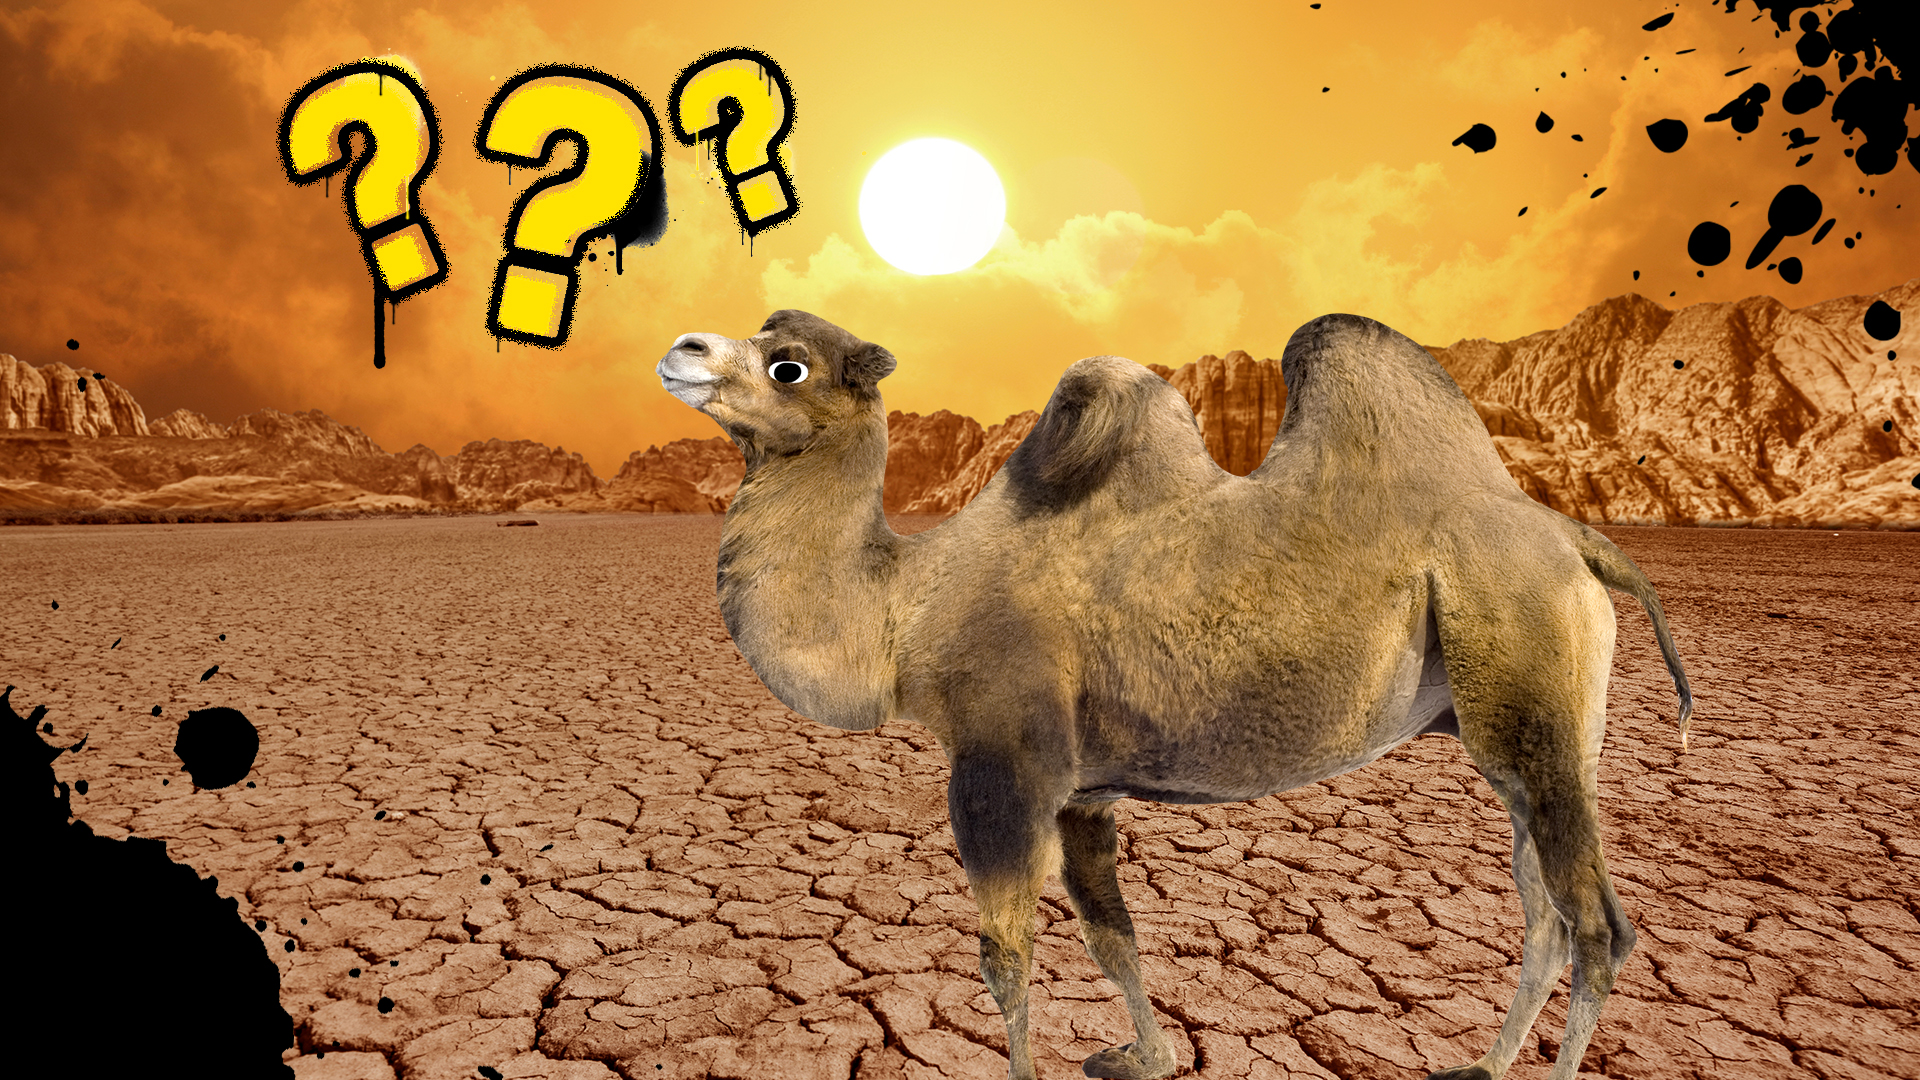 A camel walks in a desert